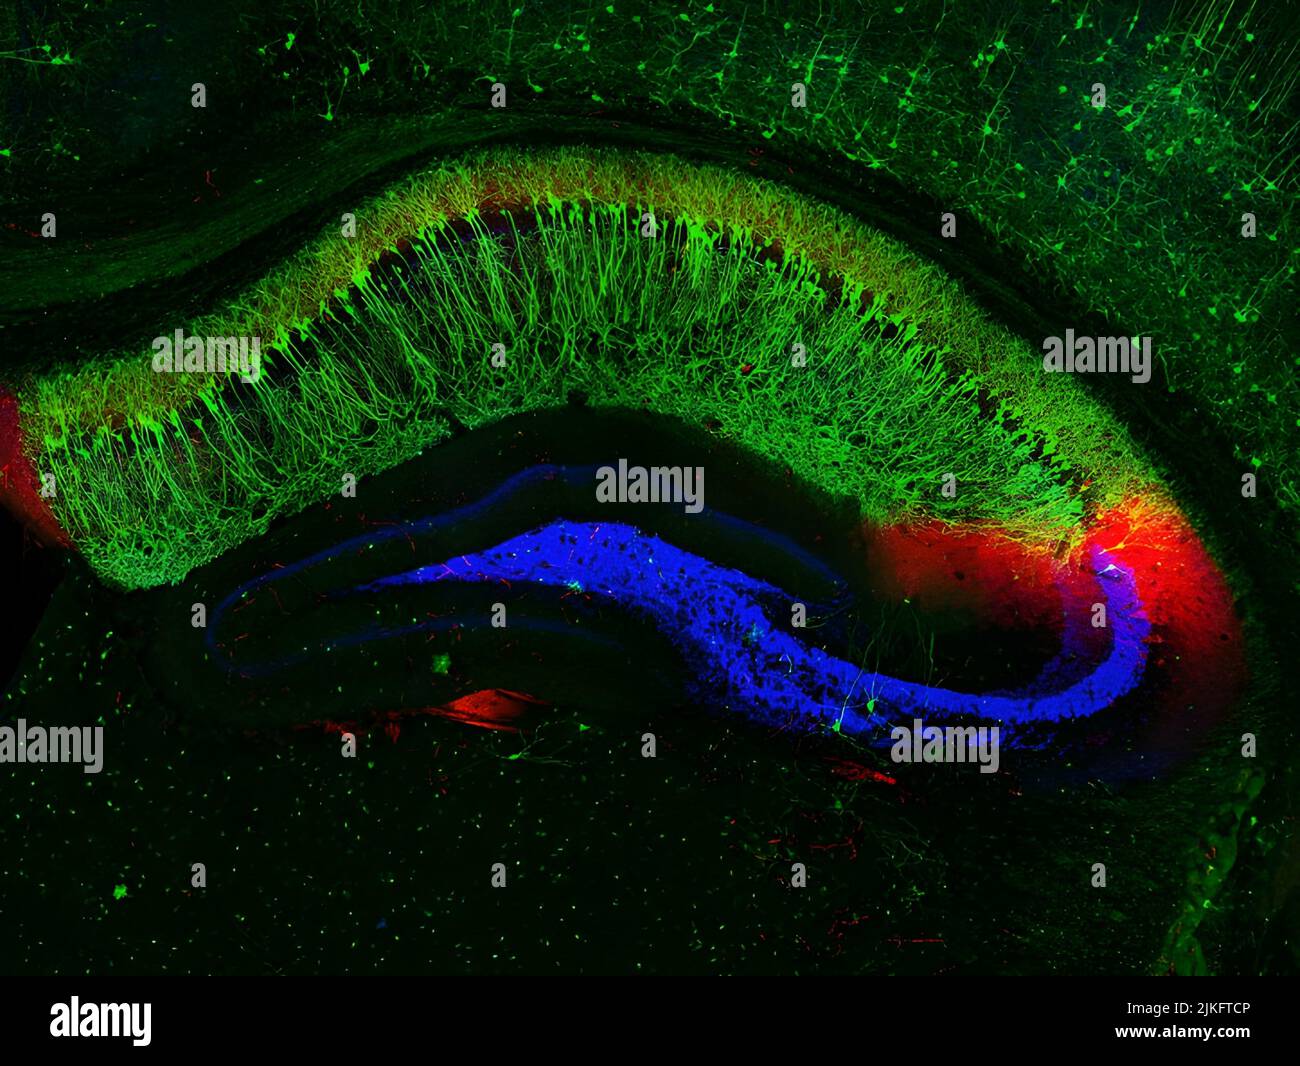 Questa immagine mostra connessioni neurali distinte in una sezione trasversale dell'ippocampo di un topo, una regione del cervello coinvolta nella memoria di fatti ed eventi. La grande area verde a forma di mezzaluna è l'area ippocampale del CA1. I suoi neuroni altamente specializzati, chiamati cellule di localizzazione, fungono da sistema GPS del cervello per tracciare la posizione. In rosso, L'area hippocampal Ca2. È importante per i ricordi precedenti delle interazioni sociali. Foto Stock